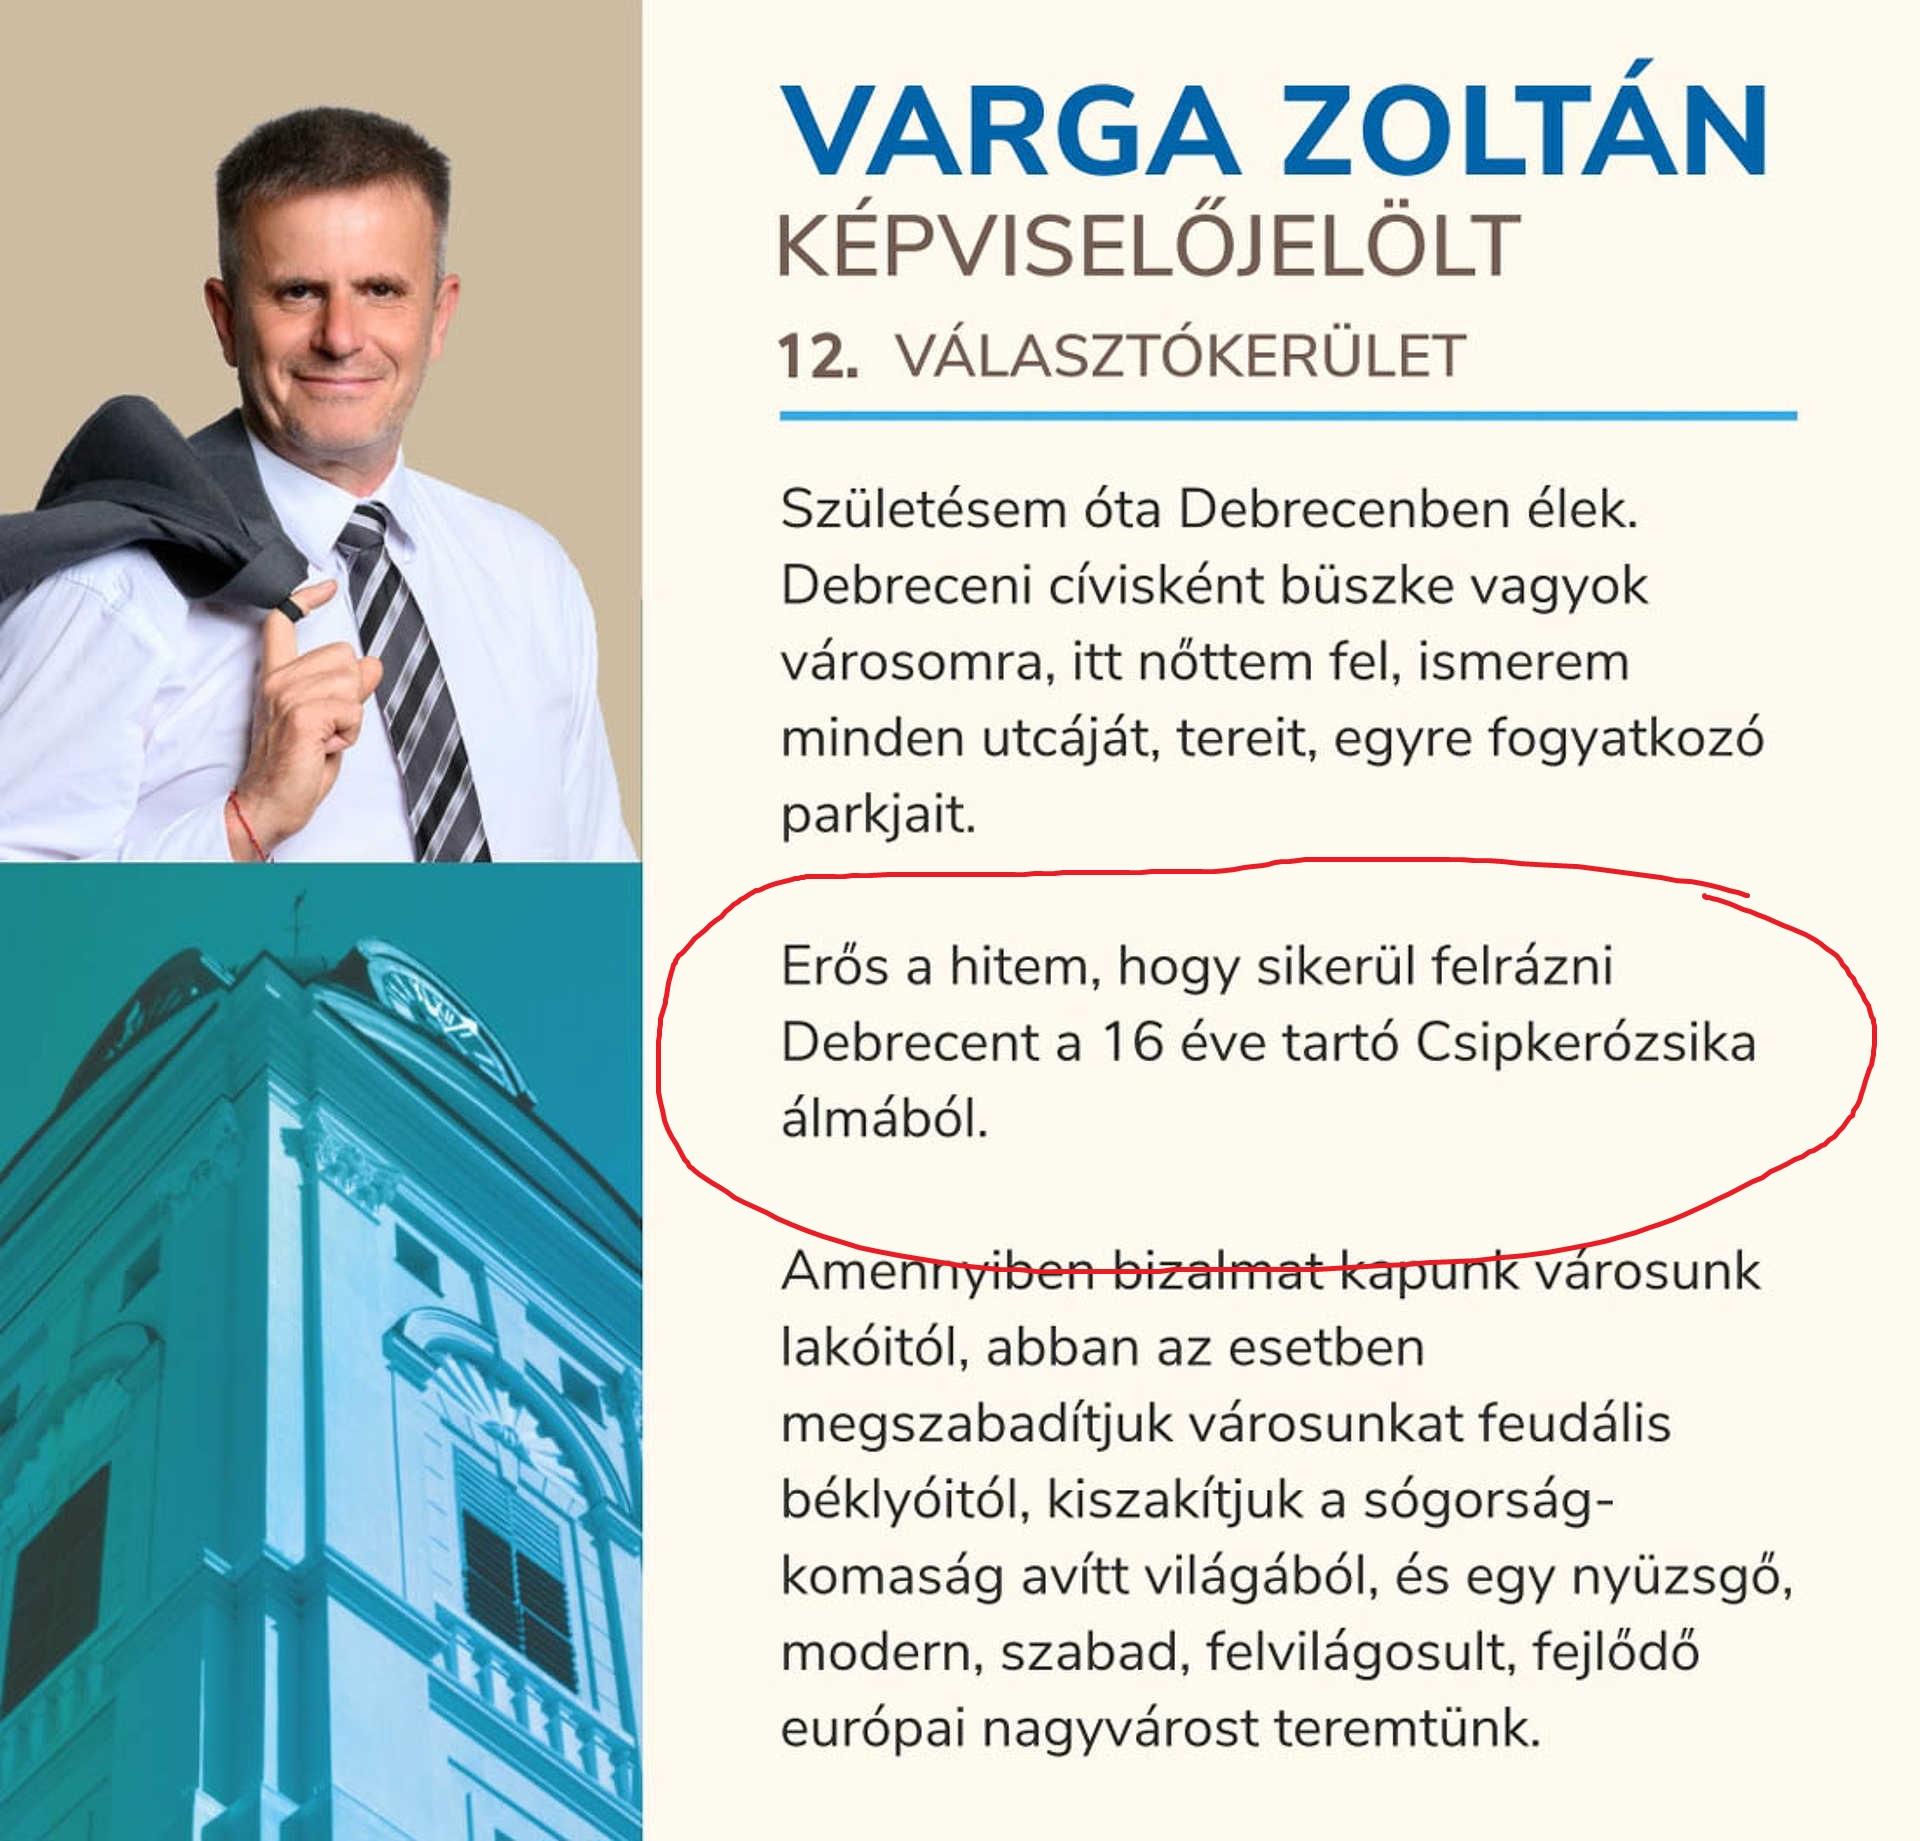 Debrecen DK-s polgármesterjelöltje újra bemásolta a 2014-es kampányszövegét, amiből vicces bonyodalmak származtak Csipkerózsikával